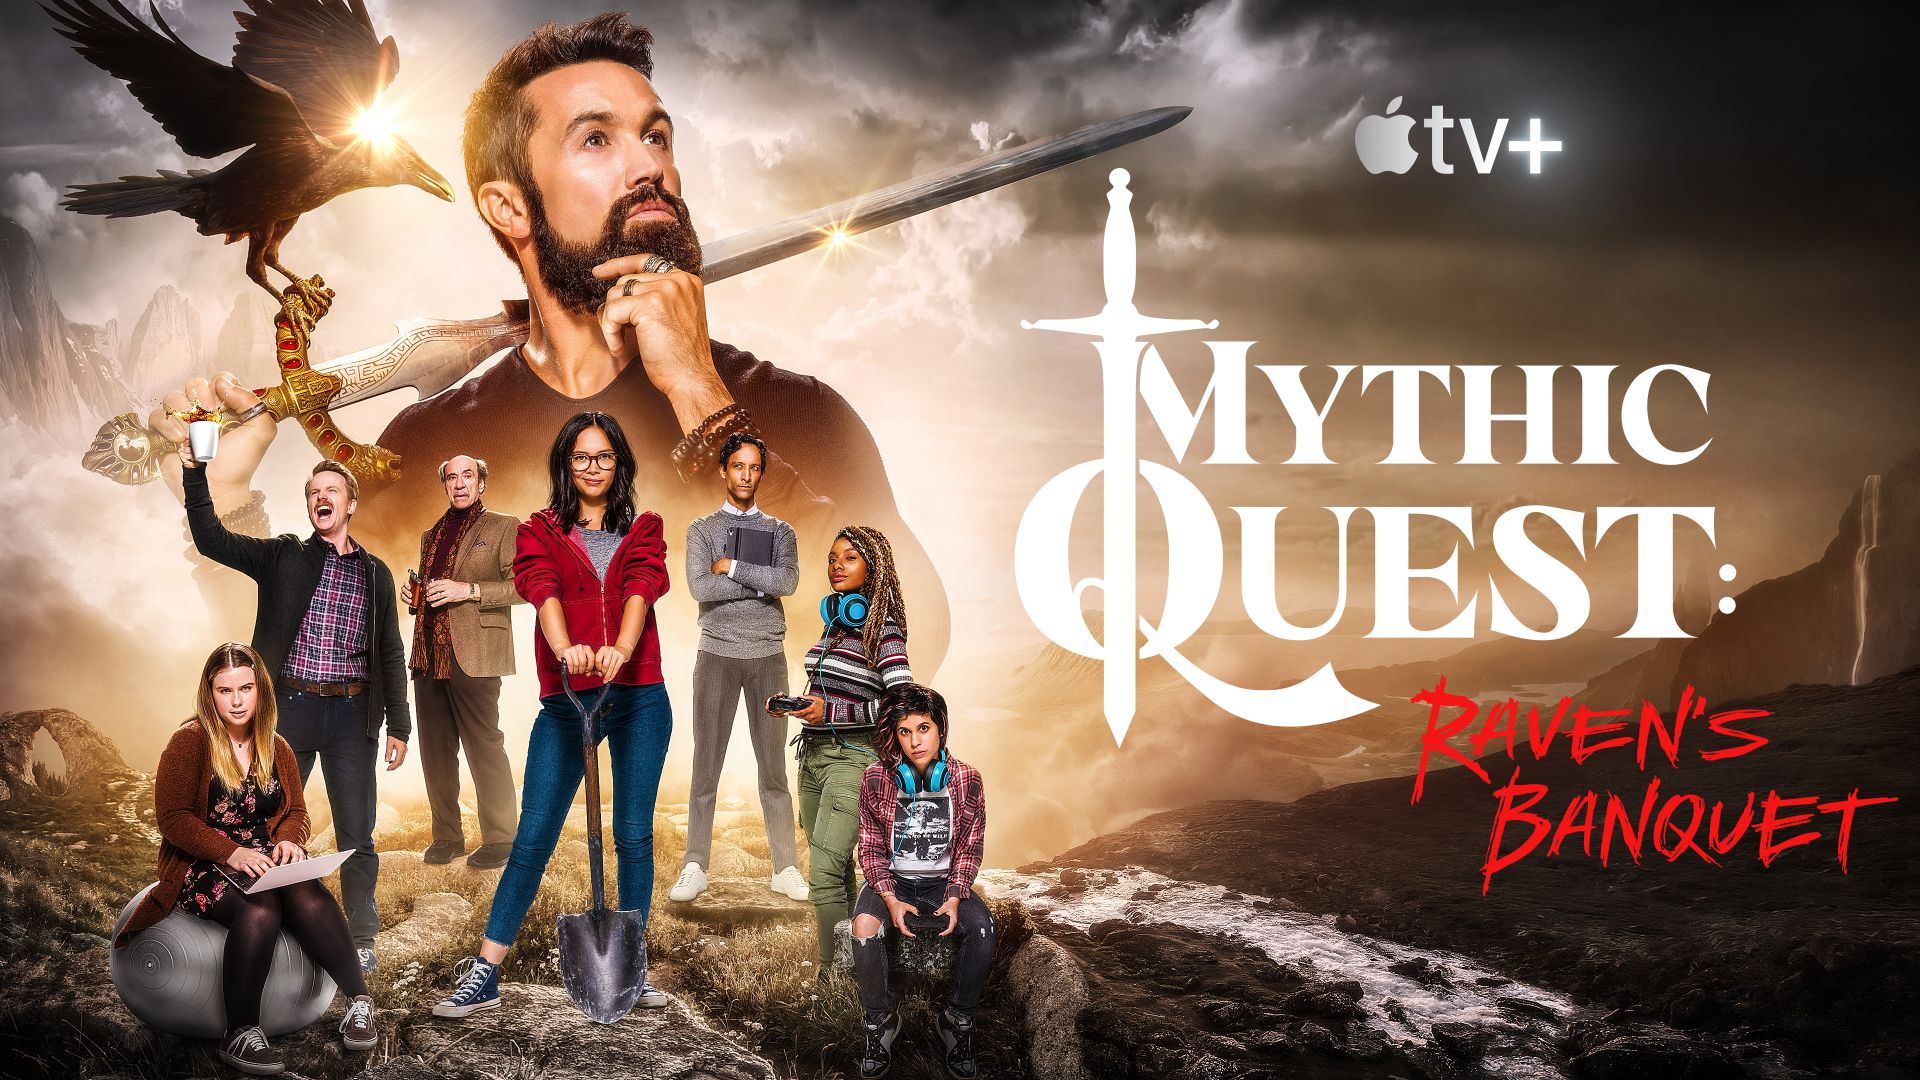 الخدمات 4 فبراير 2020 Apple يأخذ أول نظرة جيدة Apple تلفزيون + مسلسل Mythic Quest